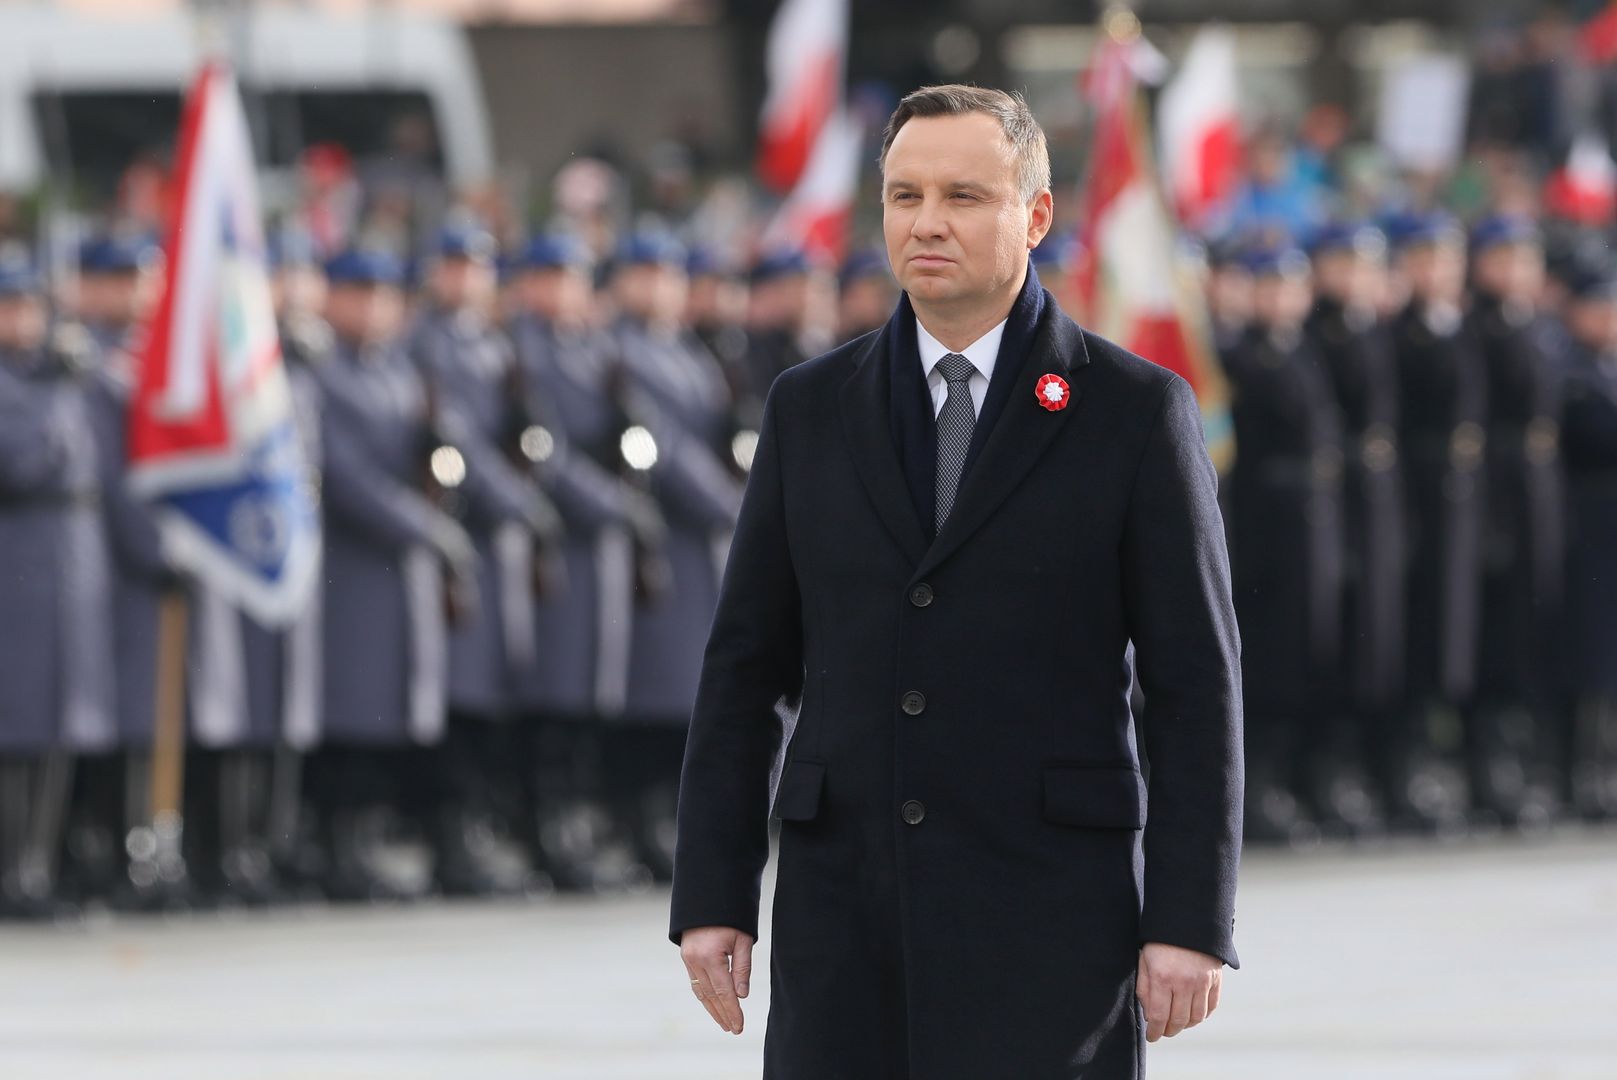 Prezydent Andrzej Duda podczas uroczystej odprawy wart przed Grobem Nieznanego Żołnierza w Warszawie